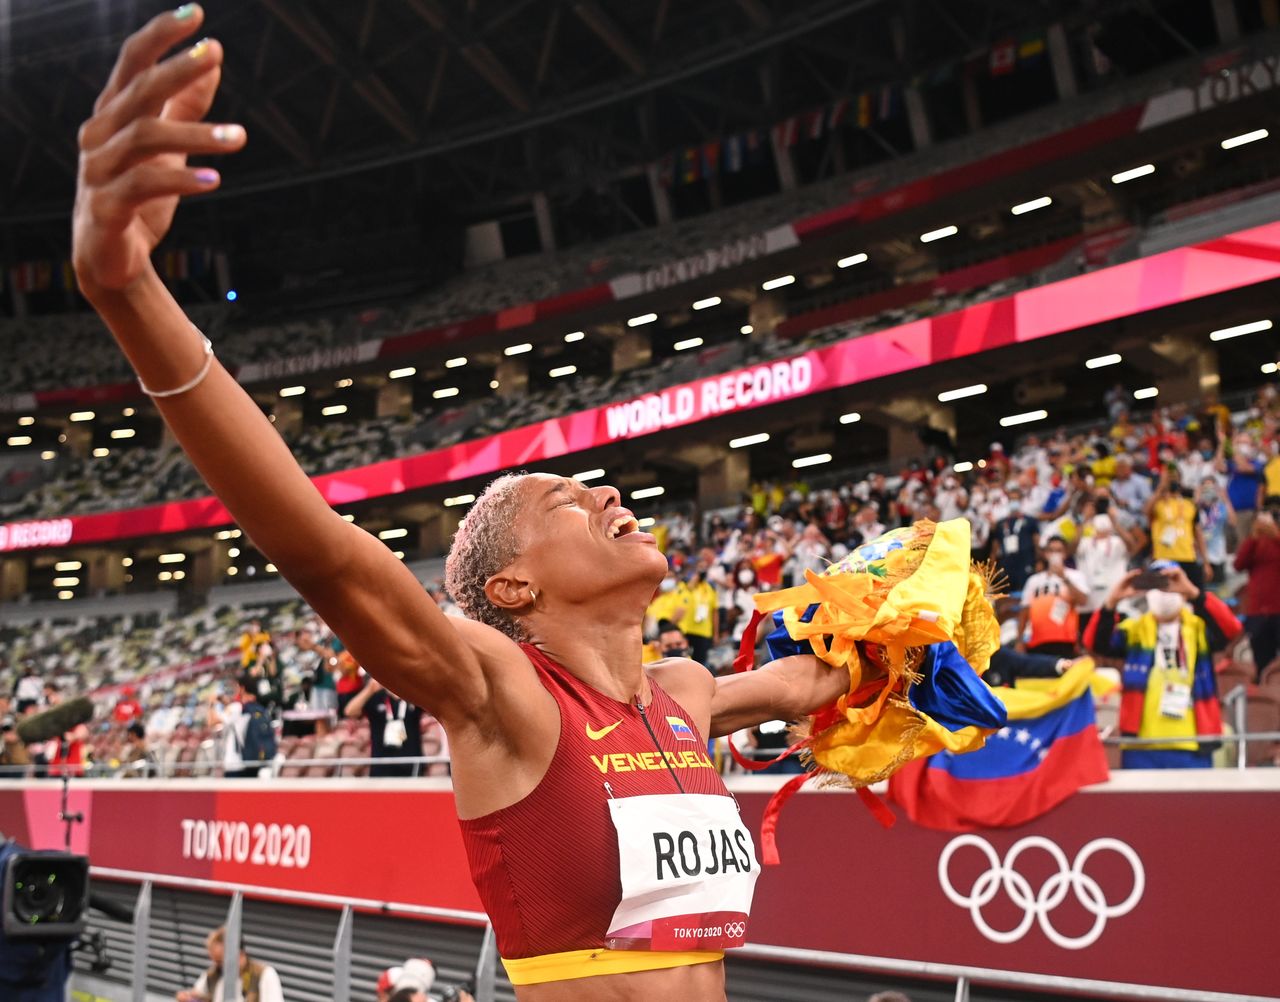 Ago 1, 2021. 
Foto del domingo de la atleta Yulimar Rojas de Venezuela celebrando tras ganar el oro olímpico e triple salto con récord mundial. 
REUTERS/Dylan Martinez